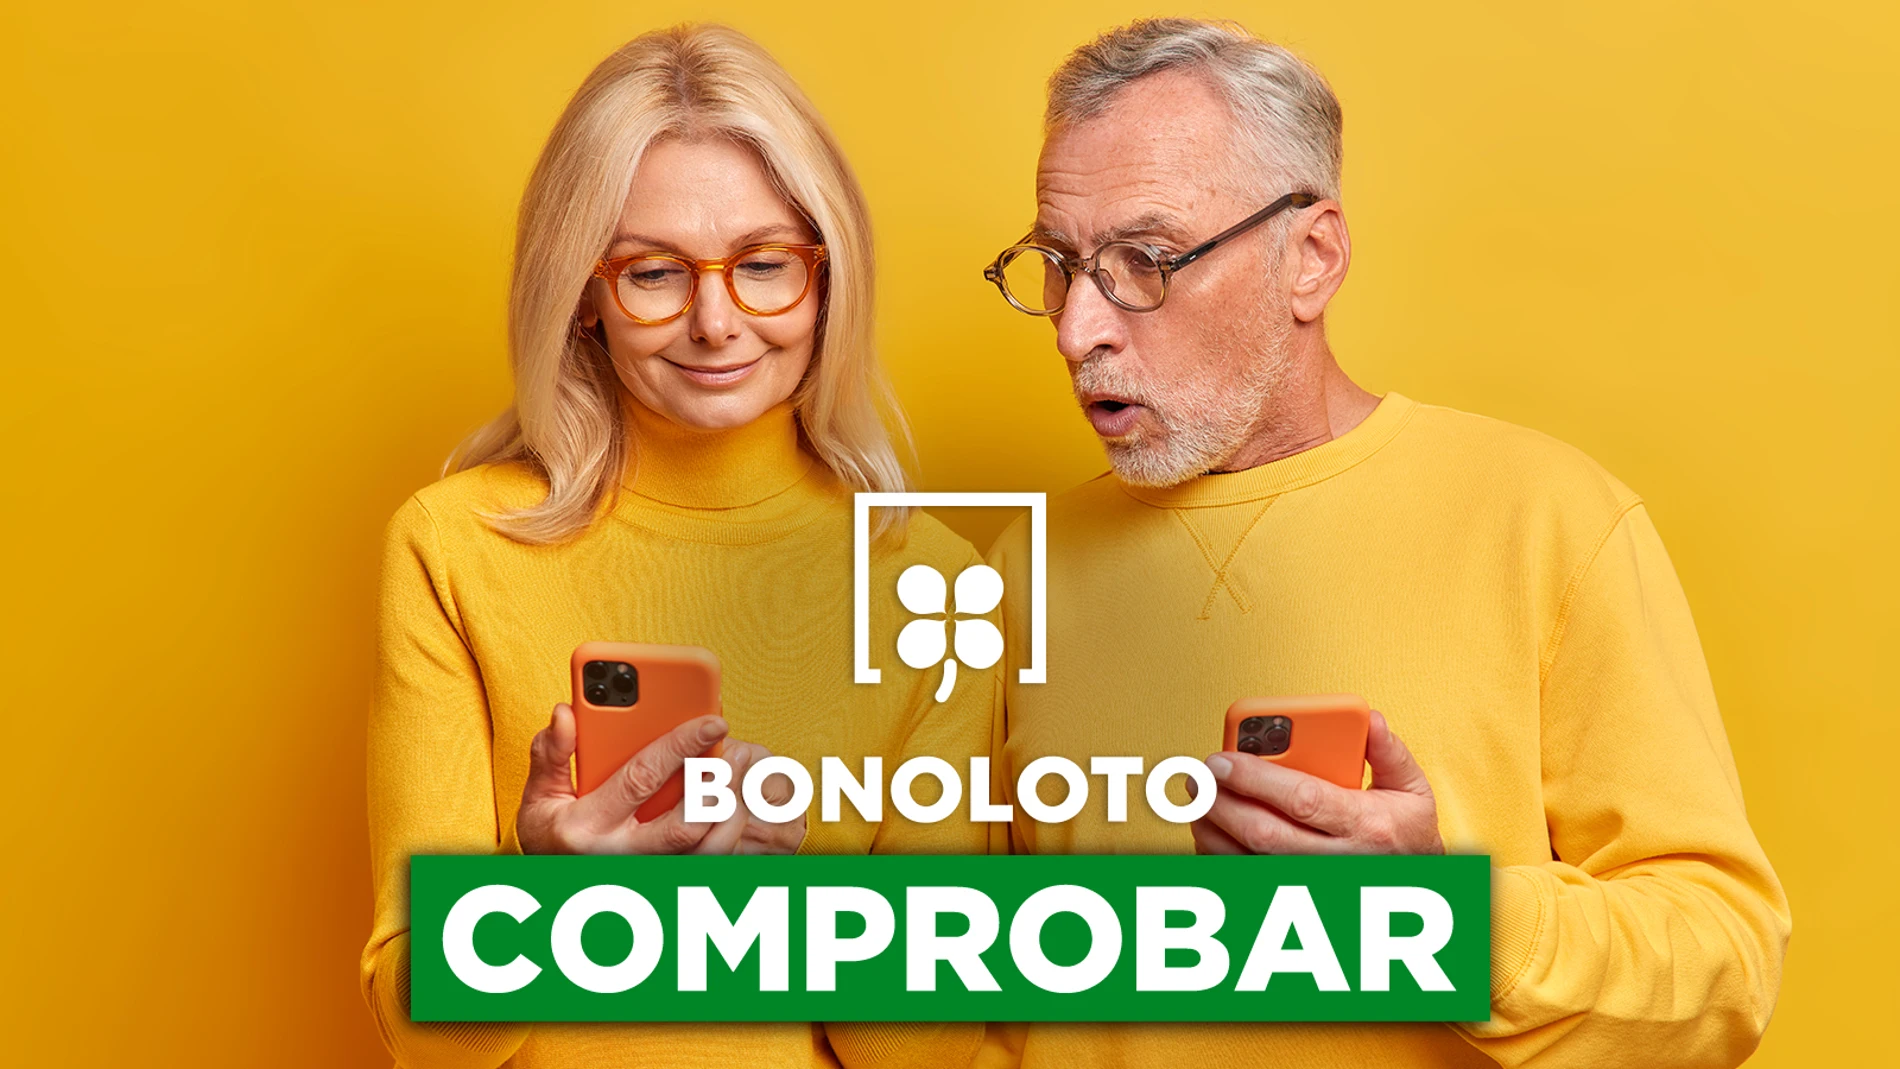 Bonoloto: comprobar hoy, viernes 4 de noviembre de 2022